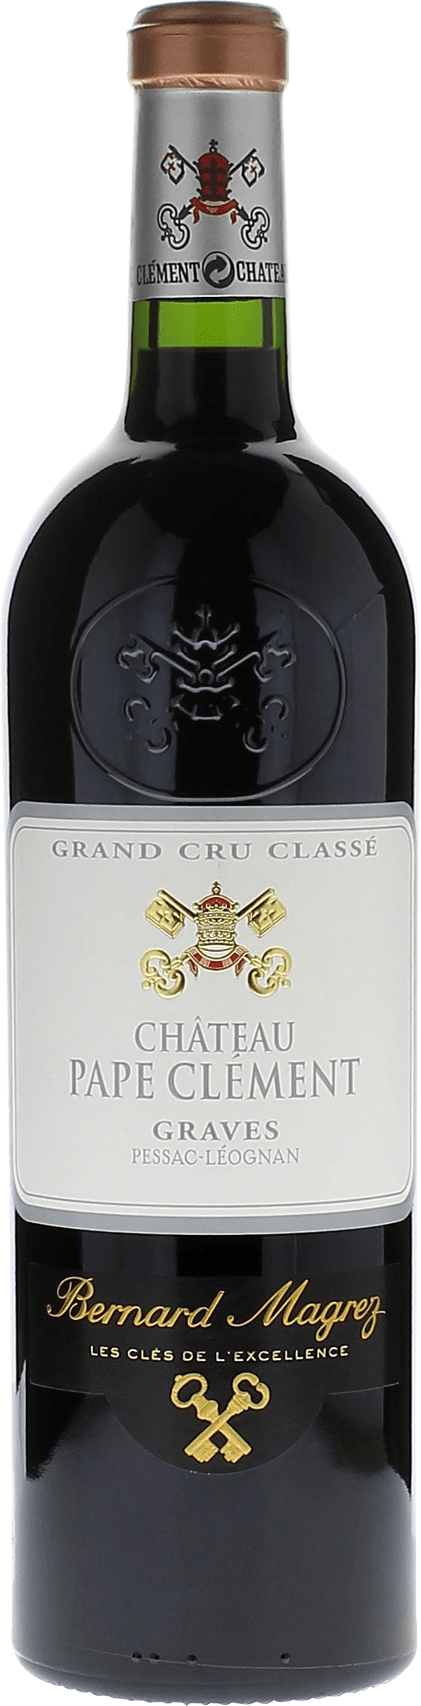 Pape clement rouge 2003 Grand Cru Class Graves, Bordeaux rouge